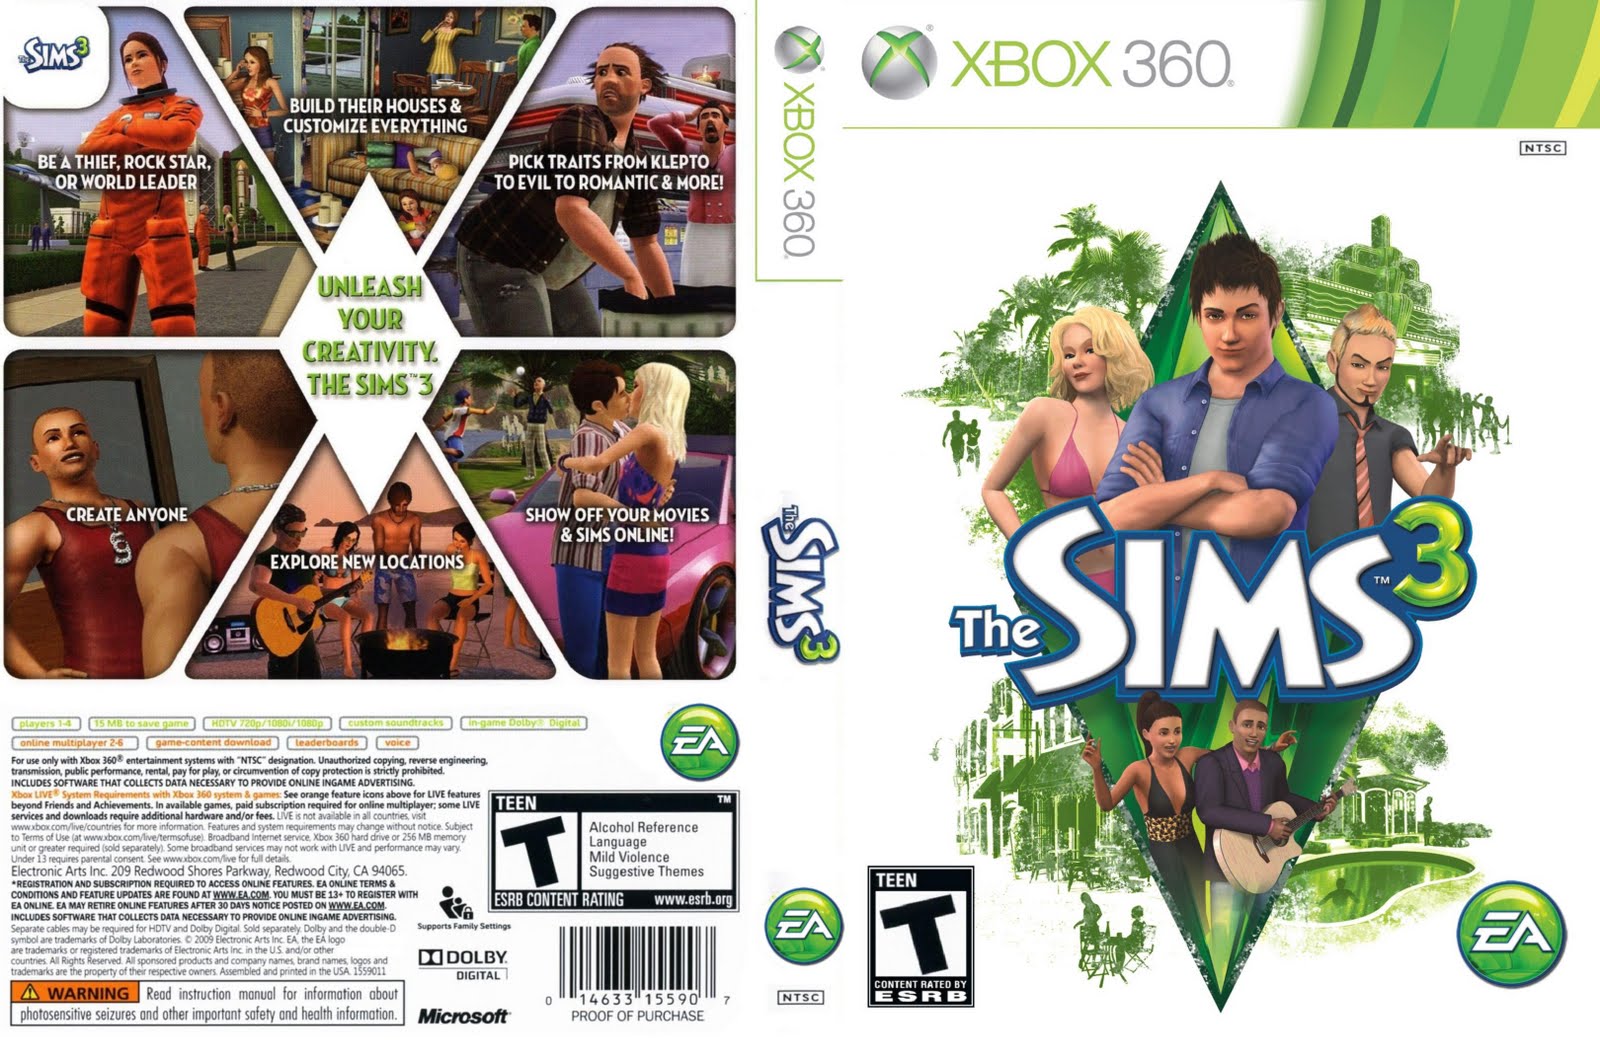 Conheça todos os códigos e cheats de The Sims 3